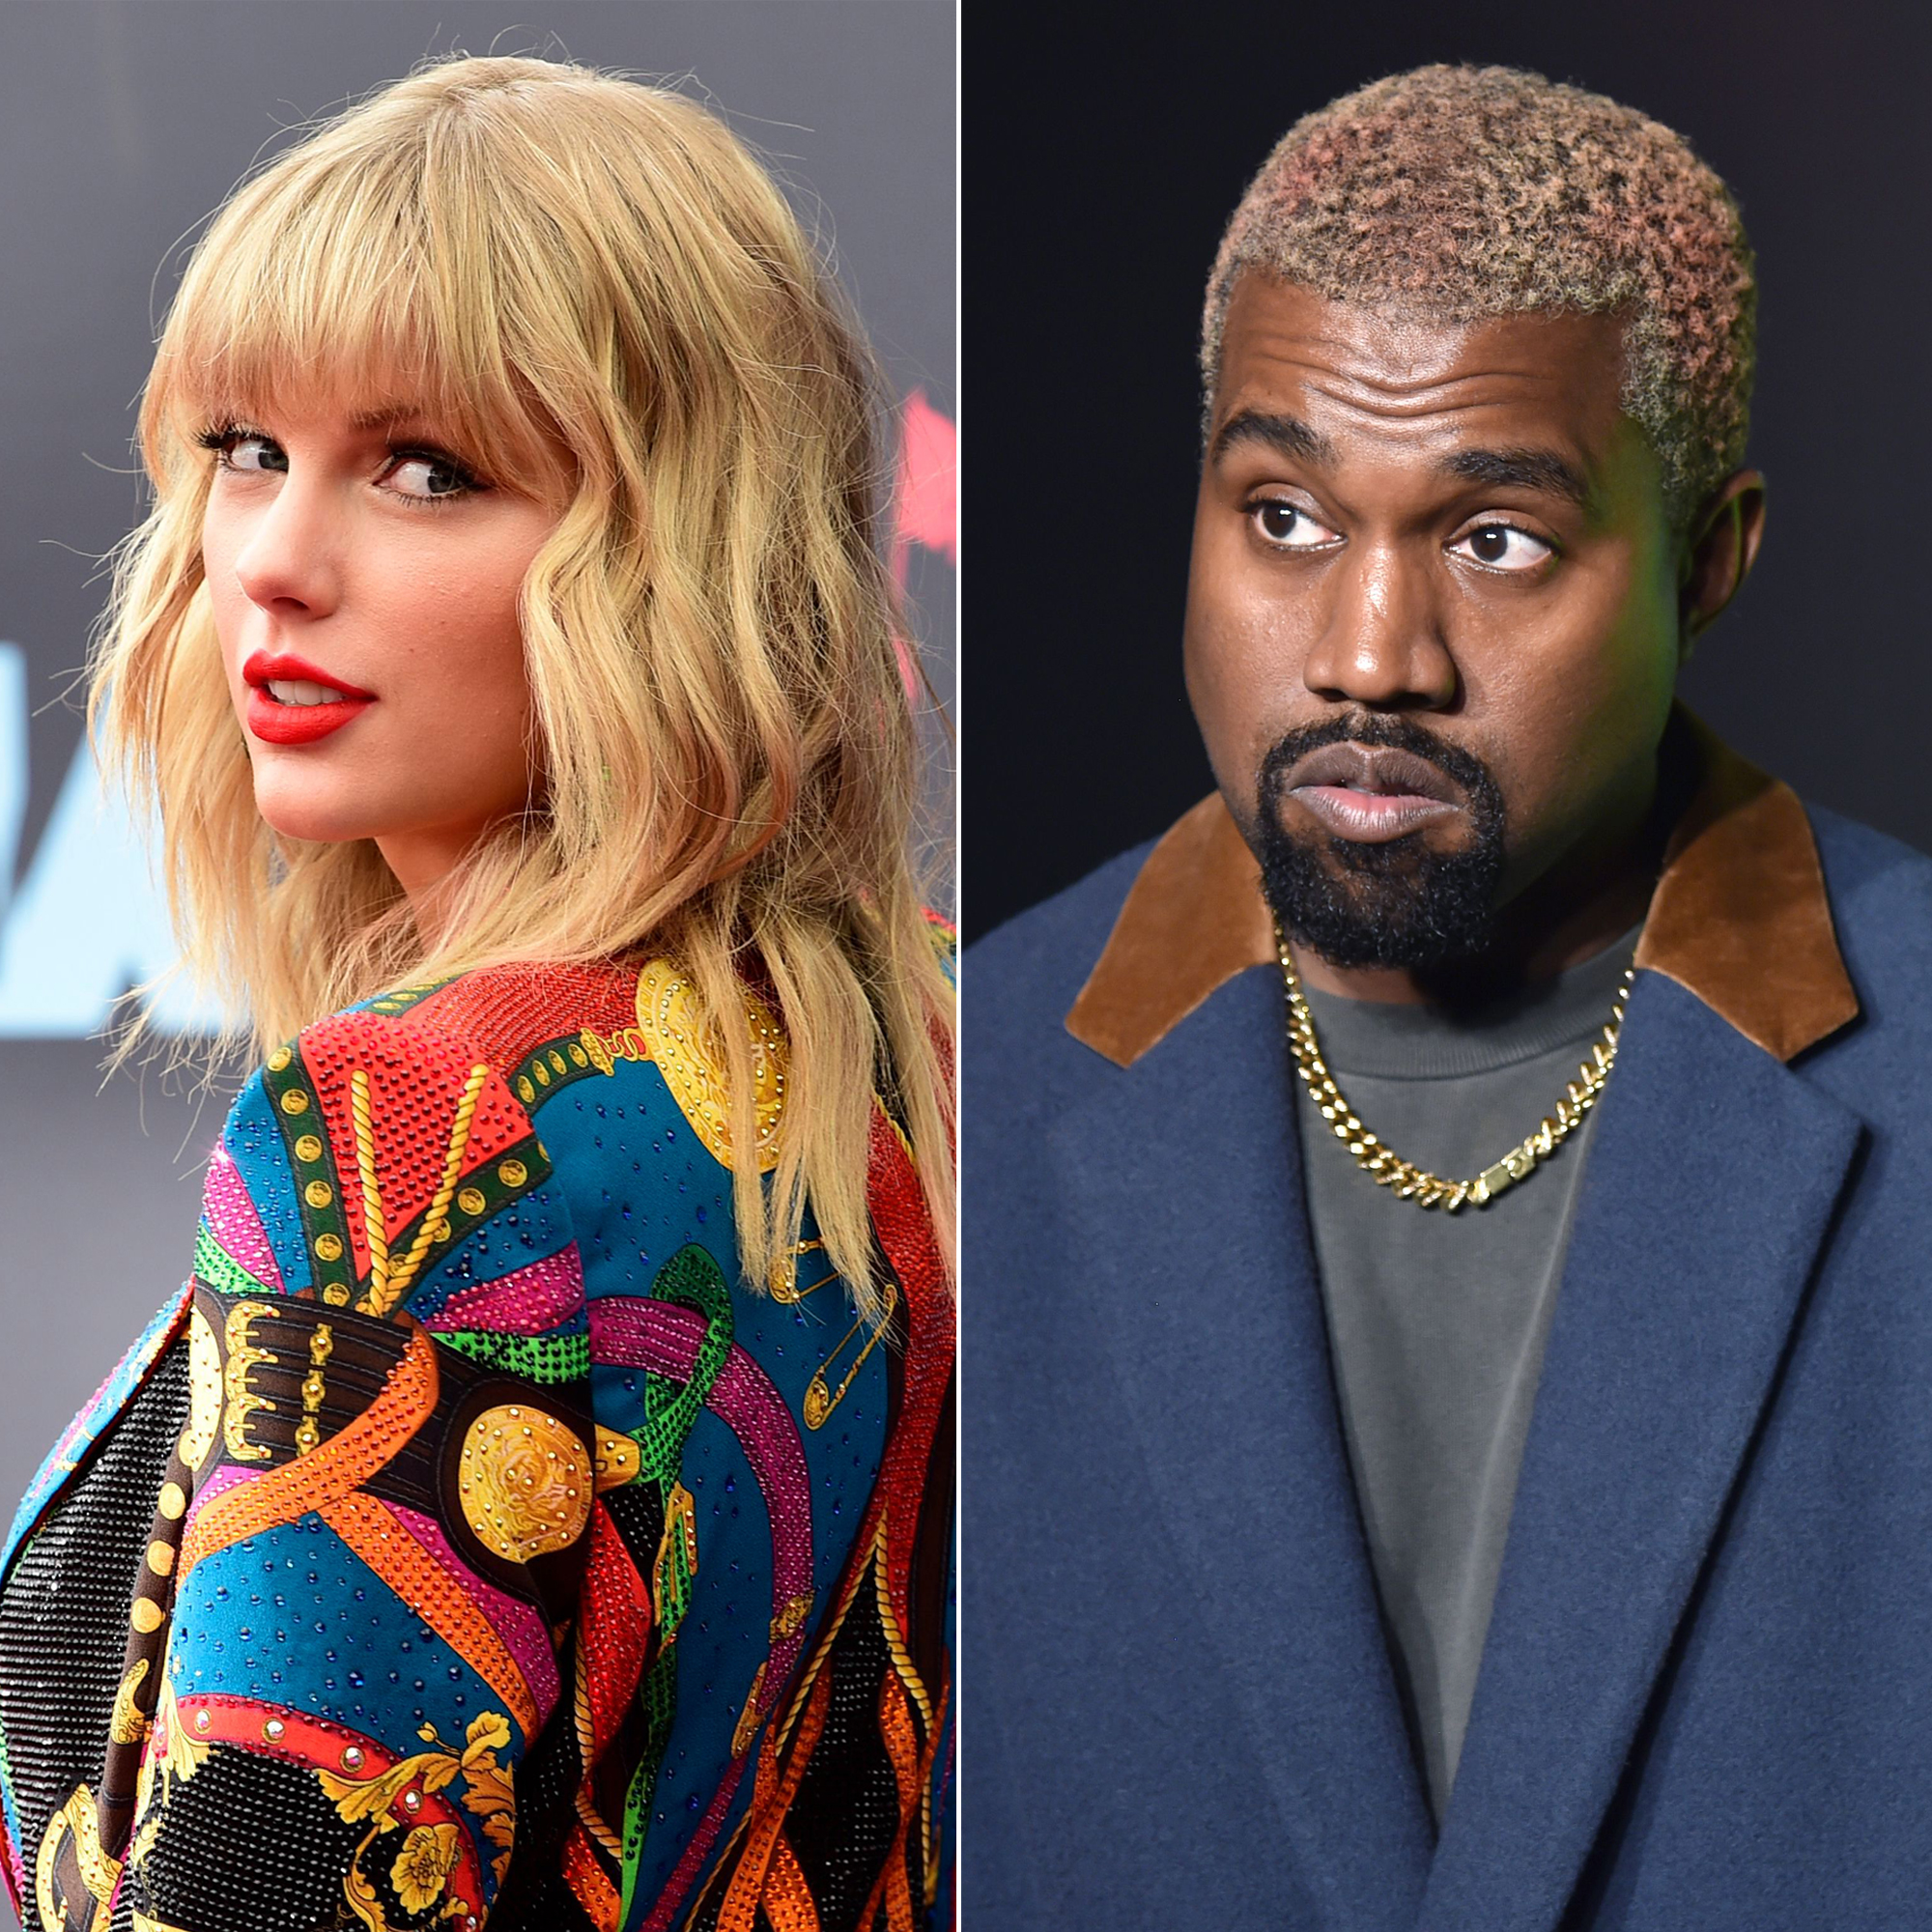 Vmas 2019 Taylor Swift Takes Slight Dig At Kanye West